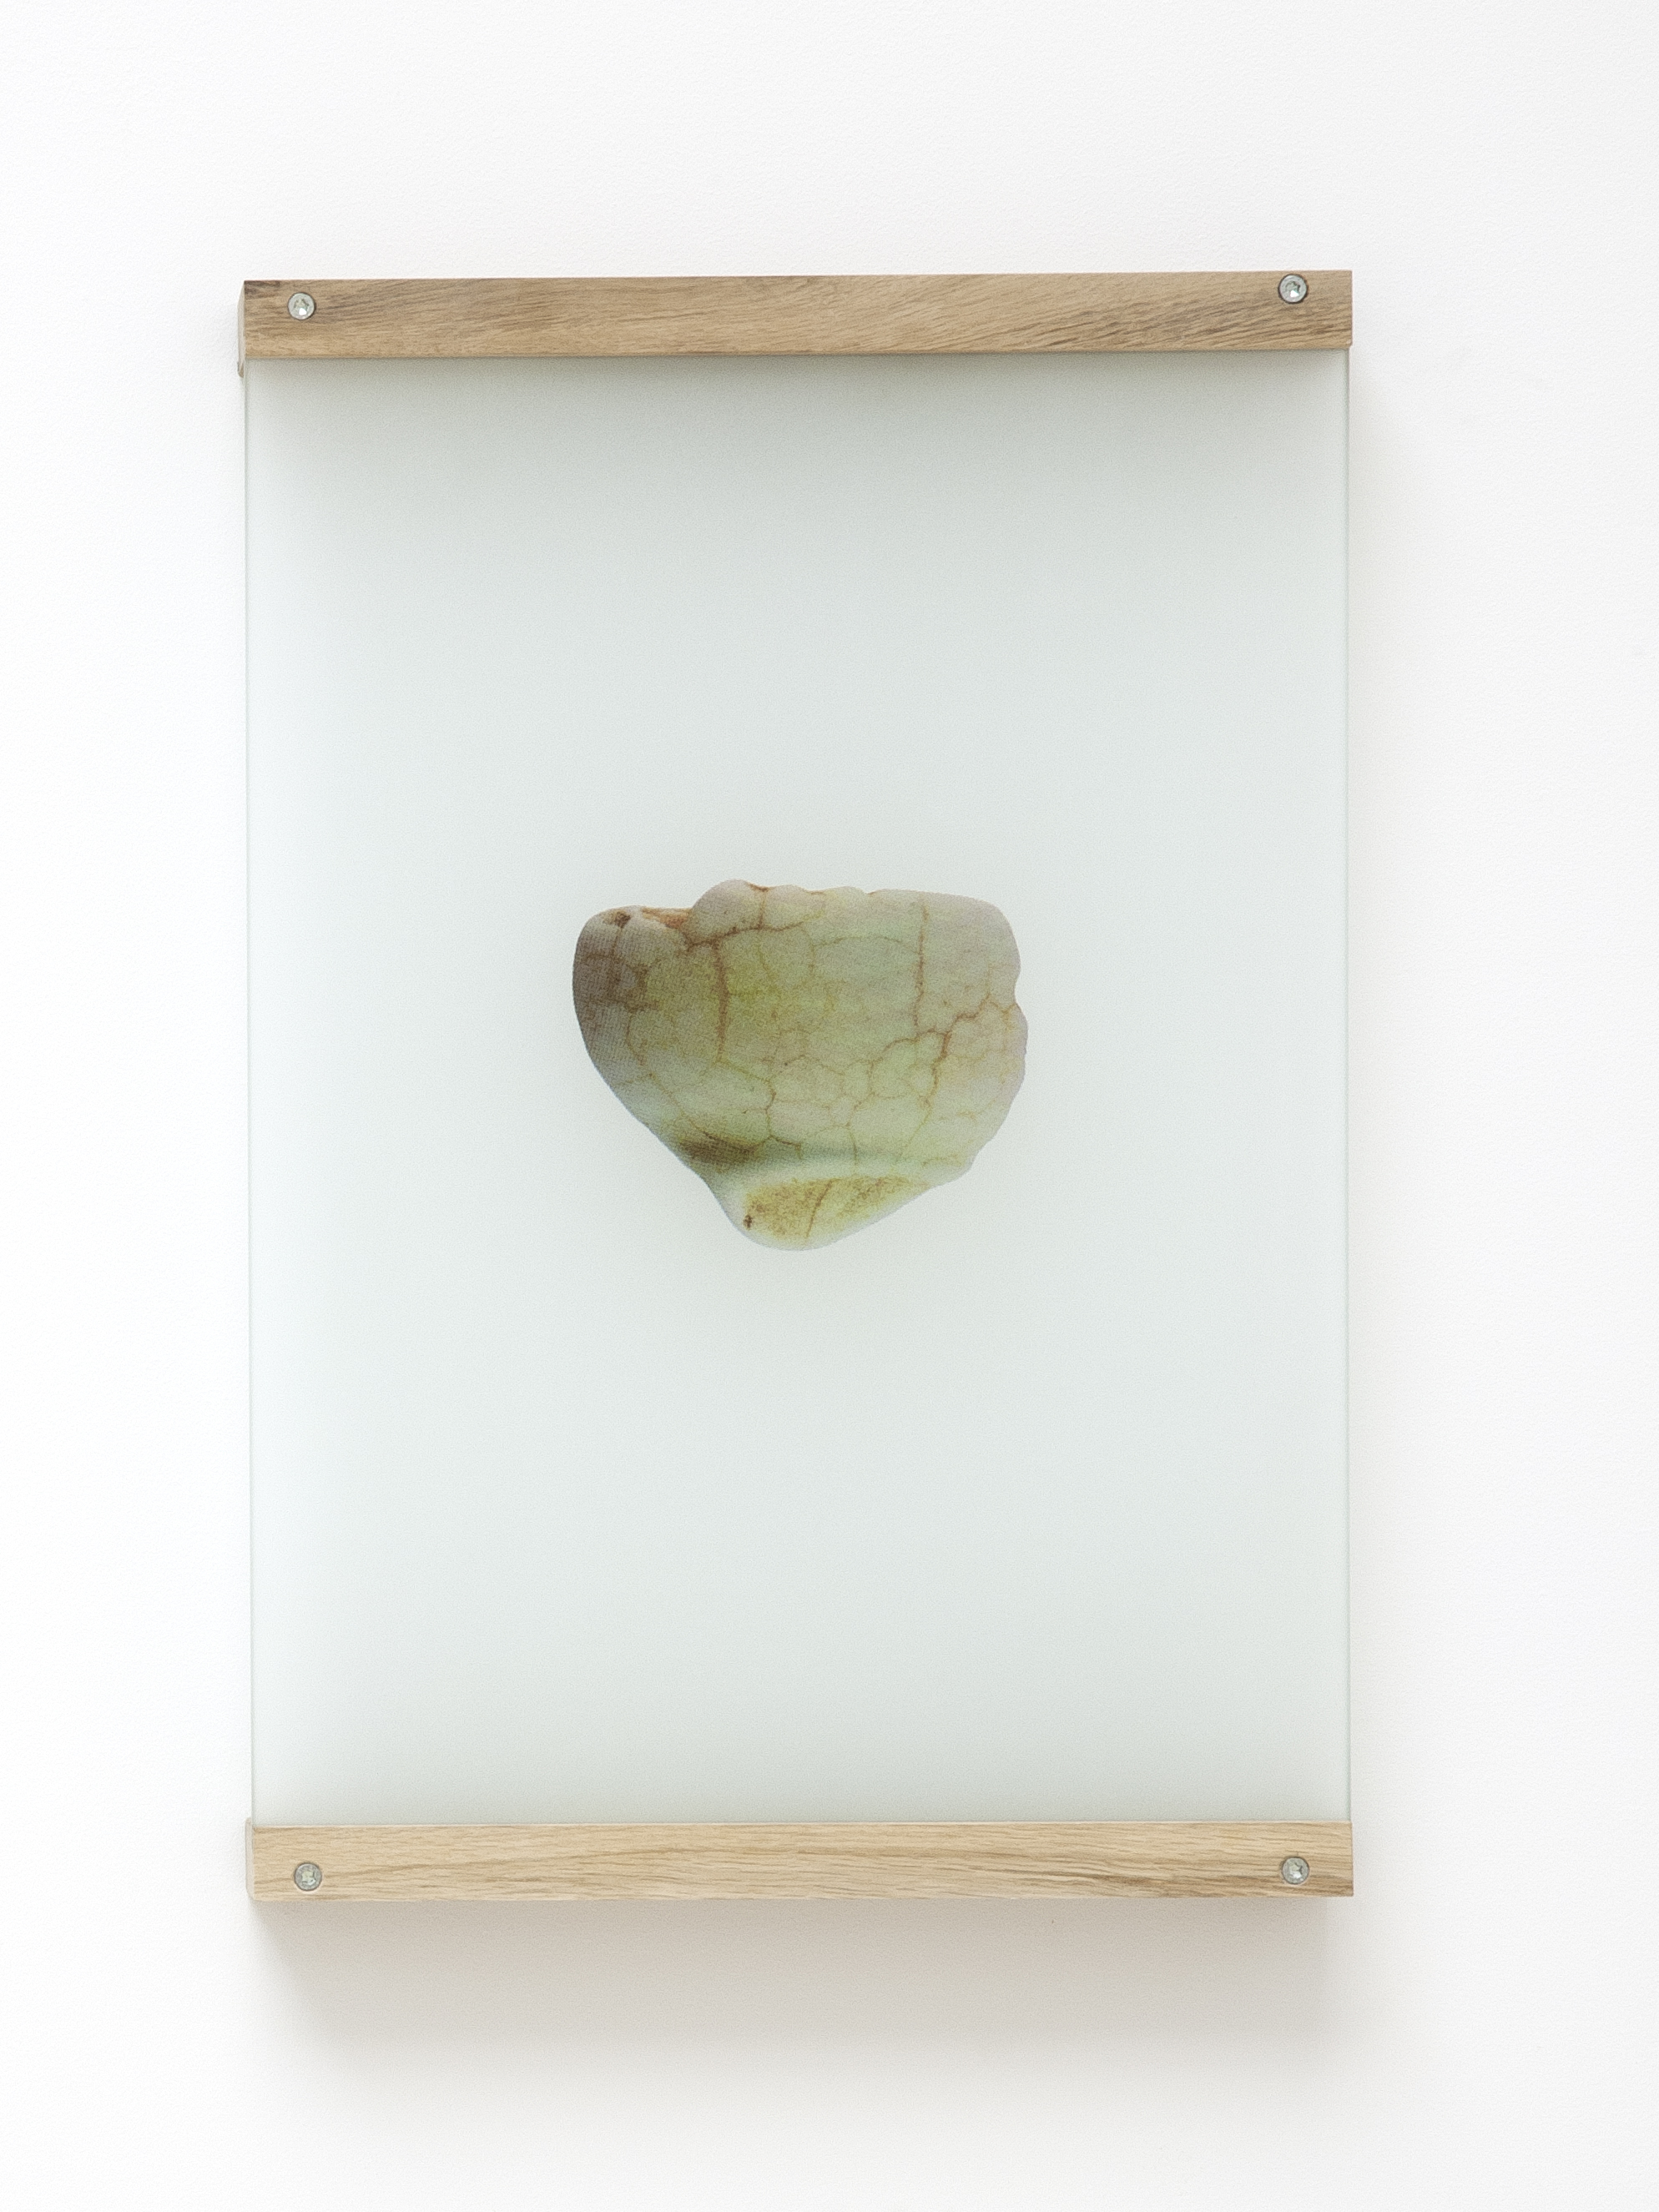 Anne-Charlotte Finel, Sableur, 2019, sérigraphie sur verre sablé (quadrichromie), 55,3 x 40 x 0,6 cm